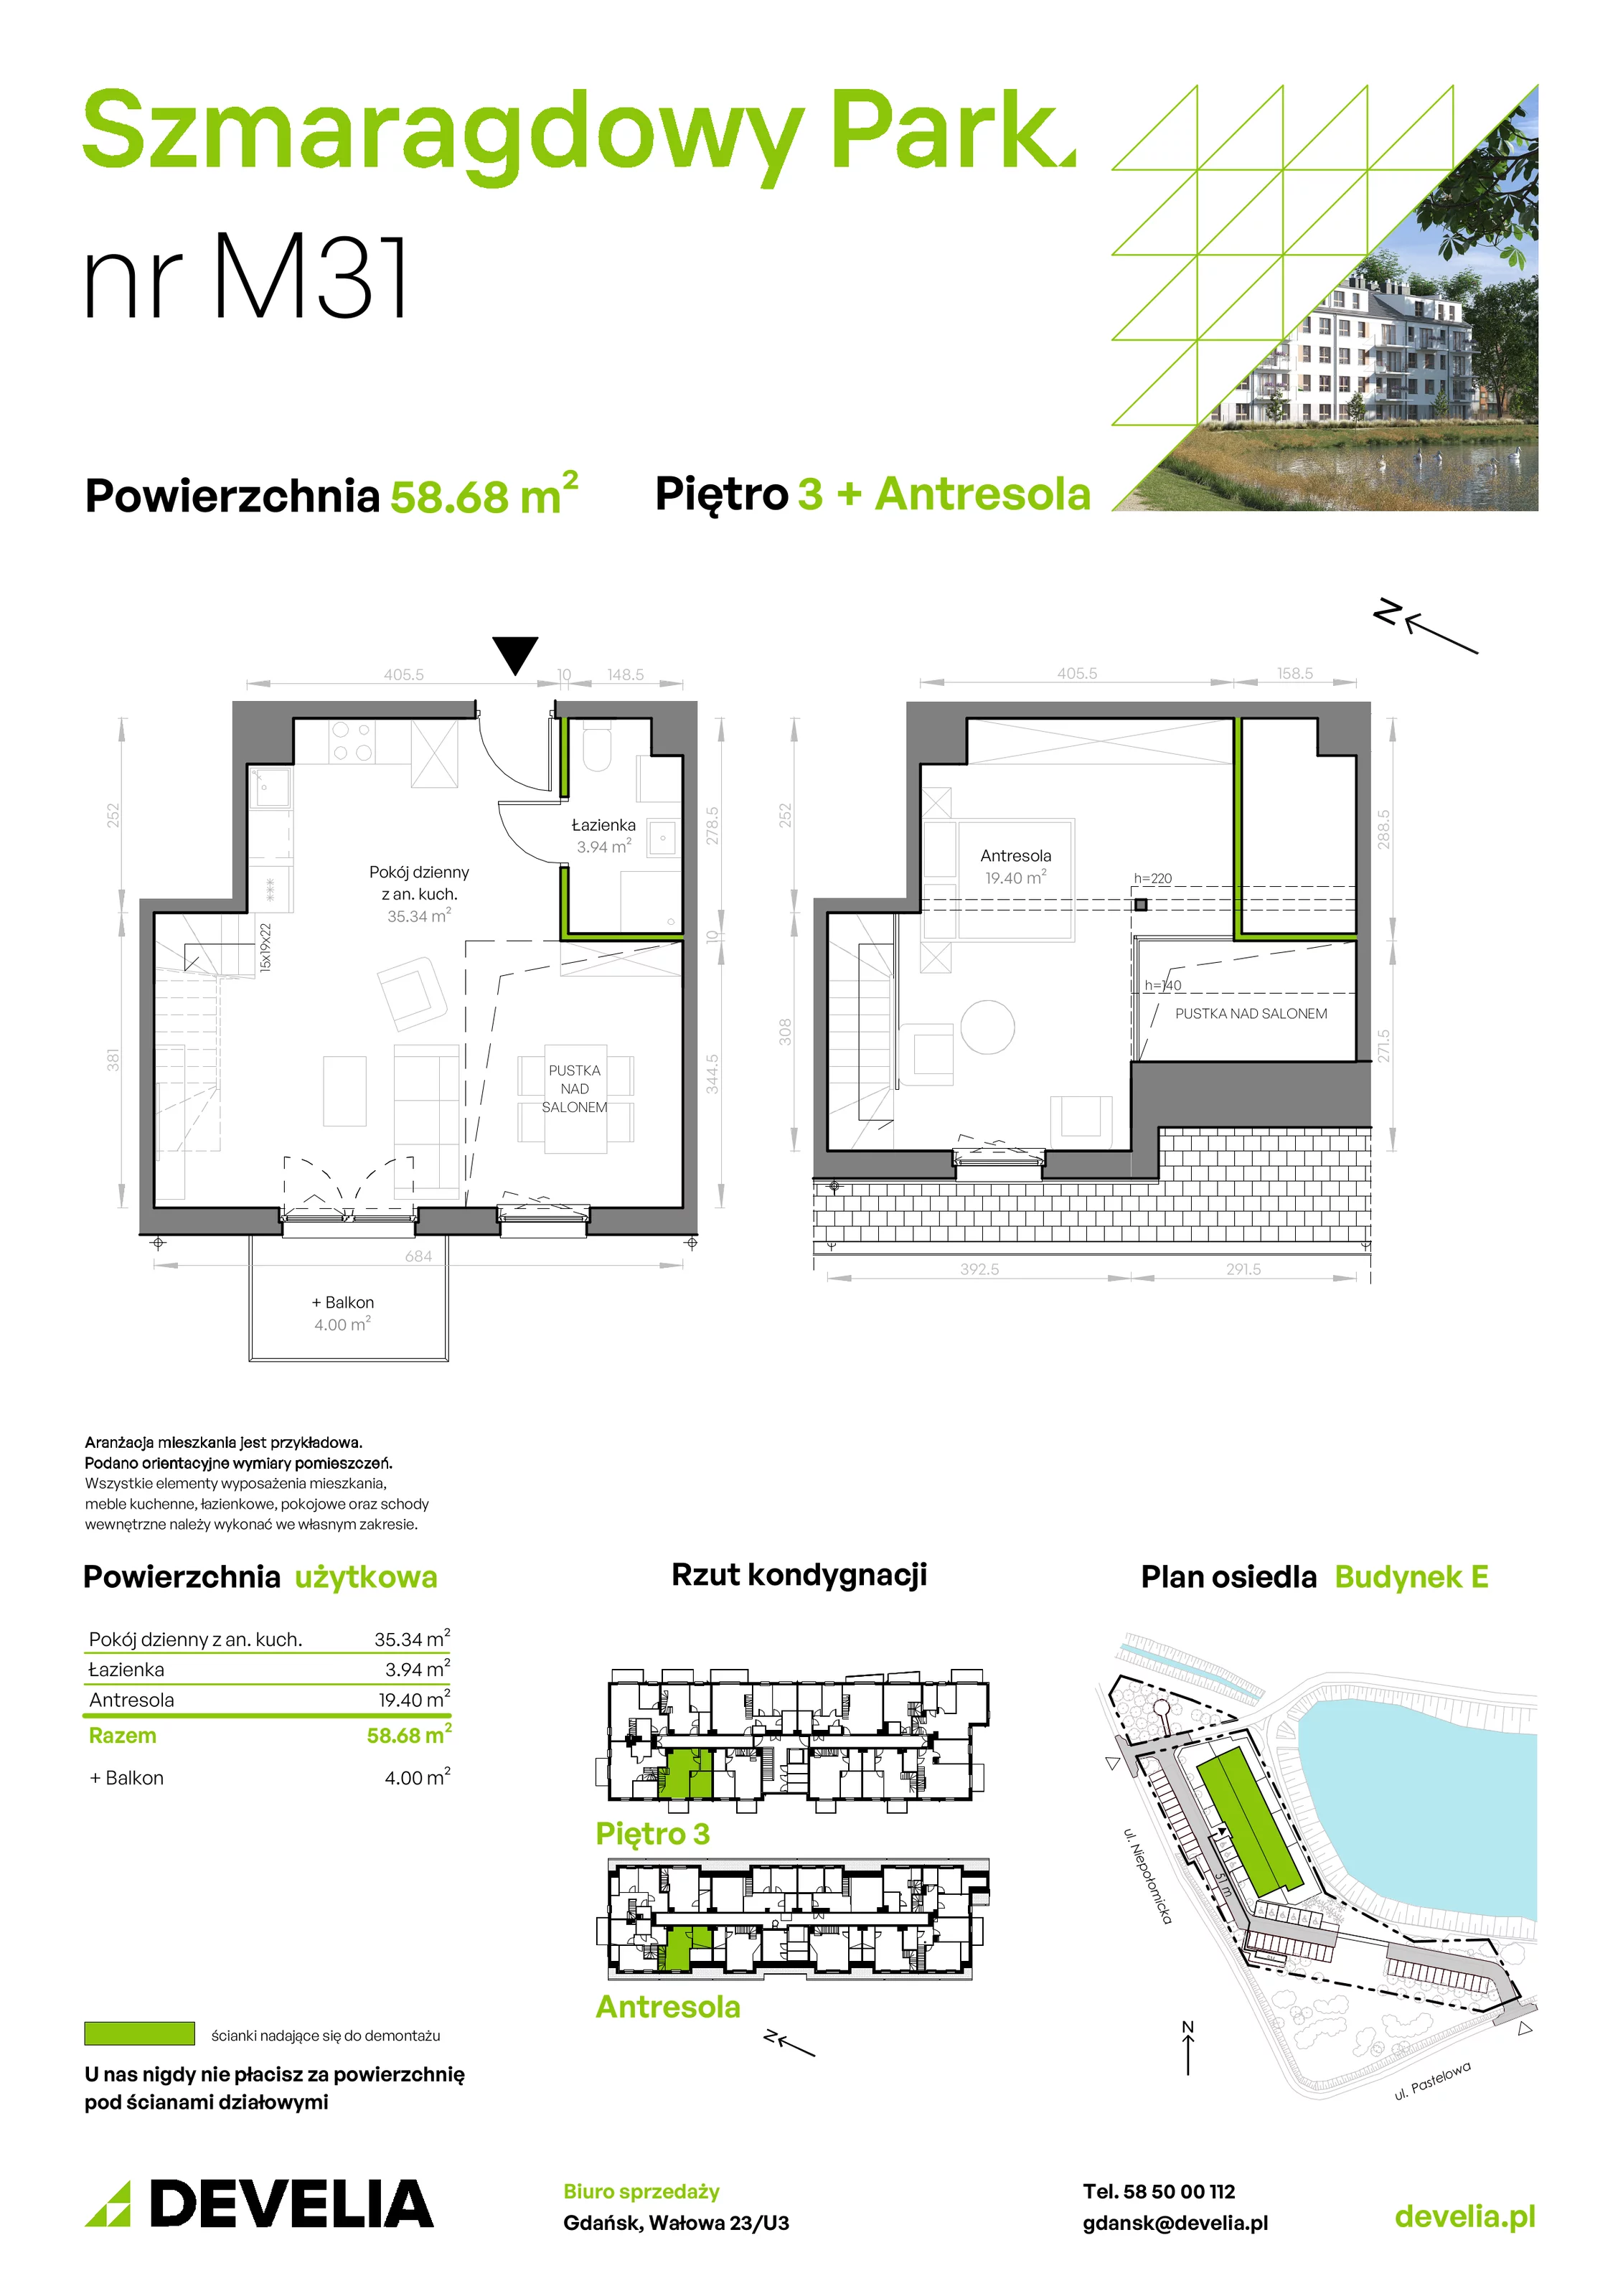 Mieszkanie 58,68 m², piętro 3, oferta nr E/031, Szmaragdowy Park, Gdańsk, Orunia Górna-Gdańsk Południe, Łostowice, ul. Topazowa 2